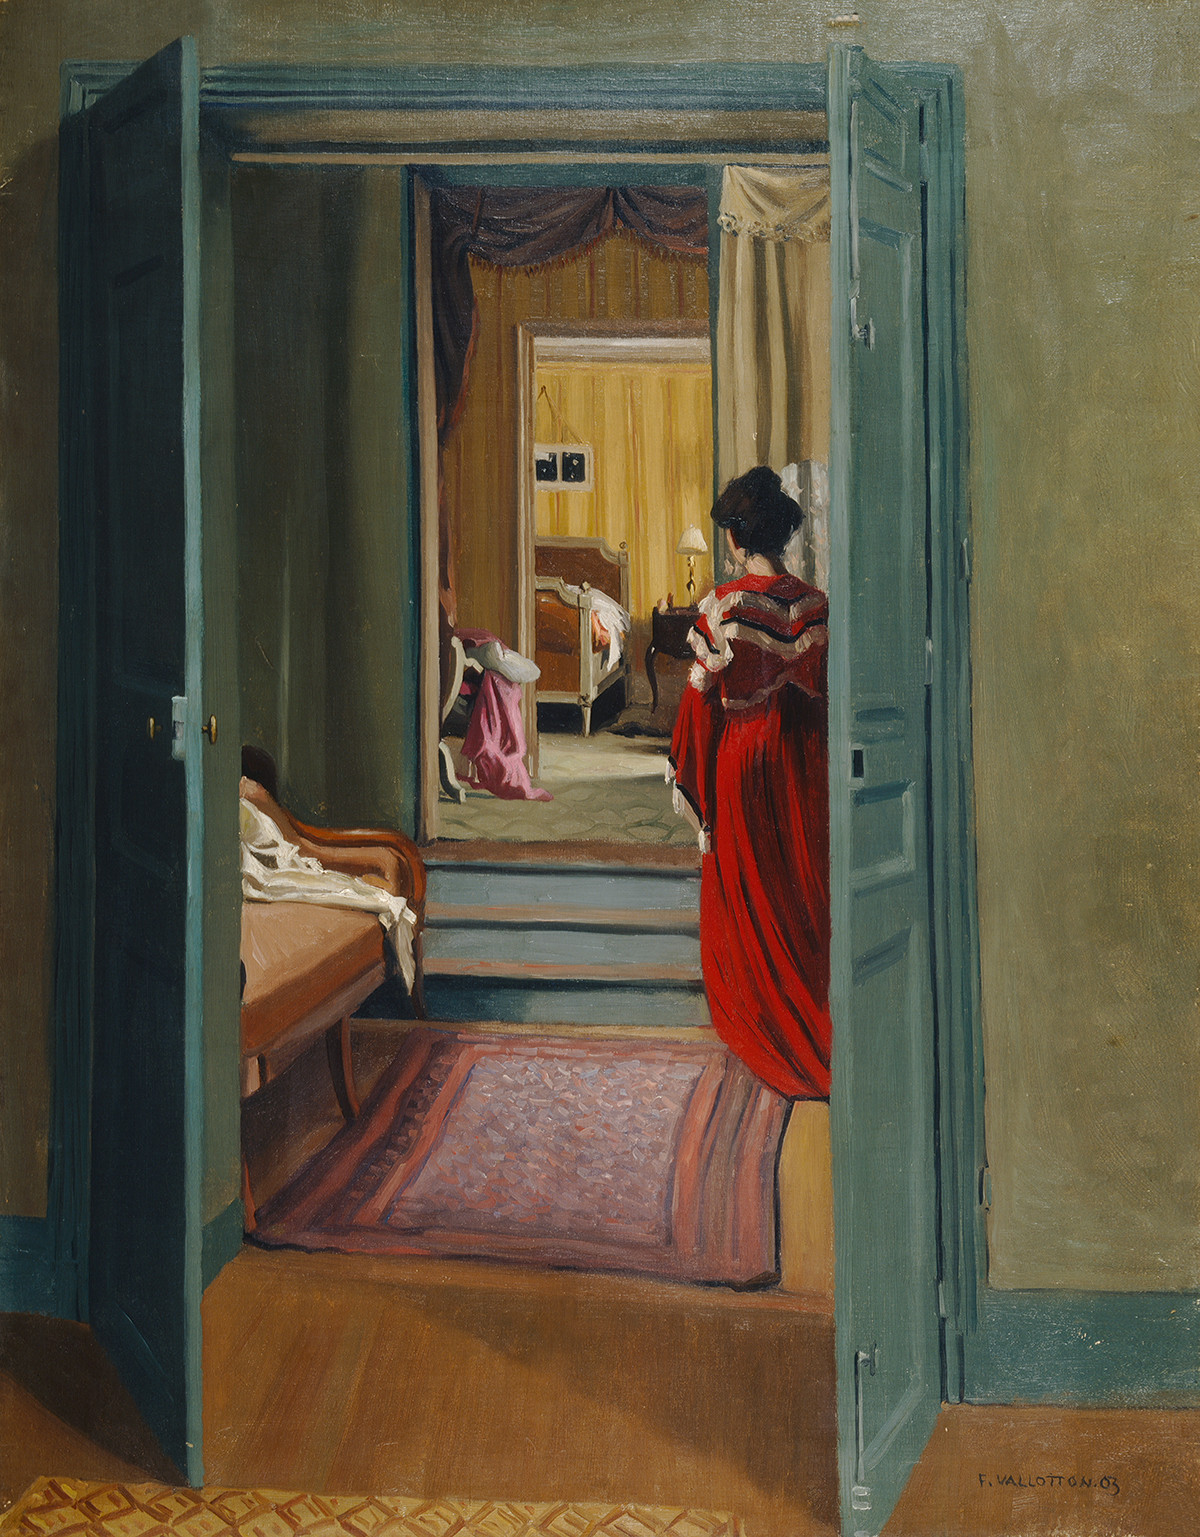 붉은 옷의 여인이 있는 실내(Interior With Woman in Red) by Félix Vallotton - 1903년 - 92.5 x 70.5 cm 